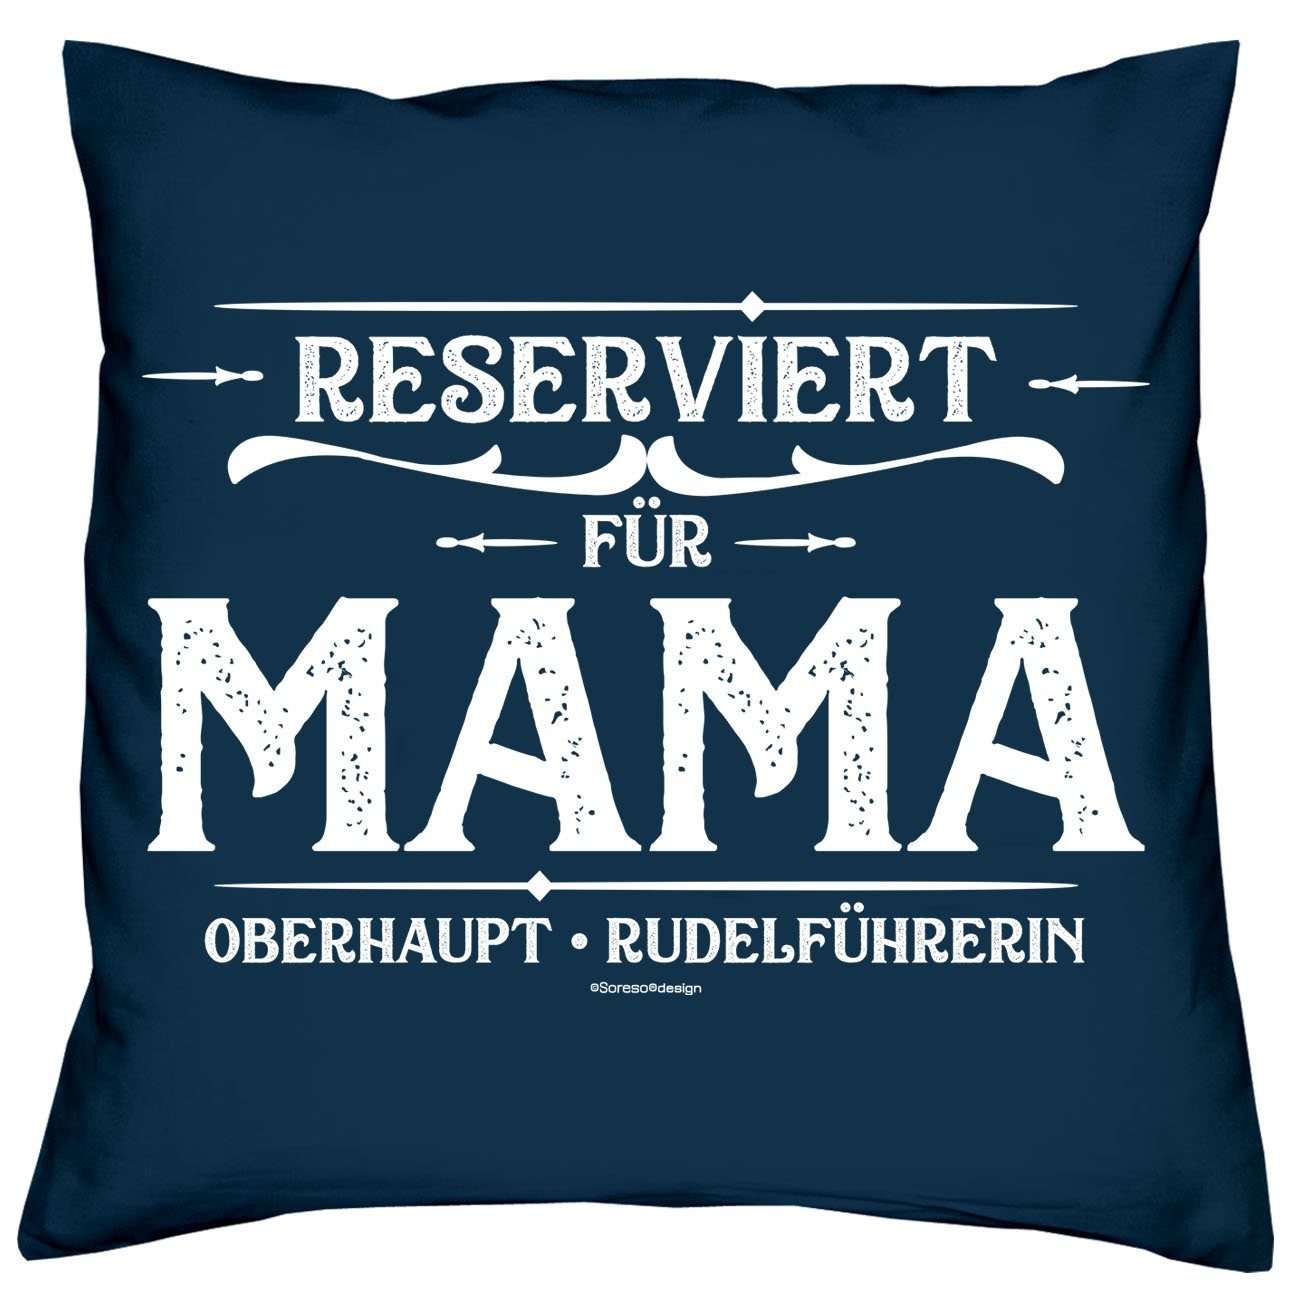 Soreso® Dekokissen Kissen Reserviert & Mama navy-blau Weihnachtsgeschenk Geschenkidee für Sprüche Sleep, Socken